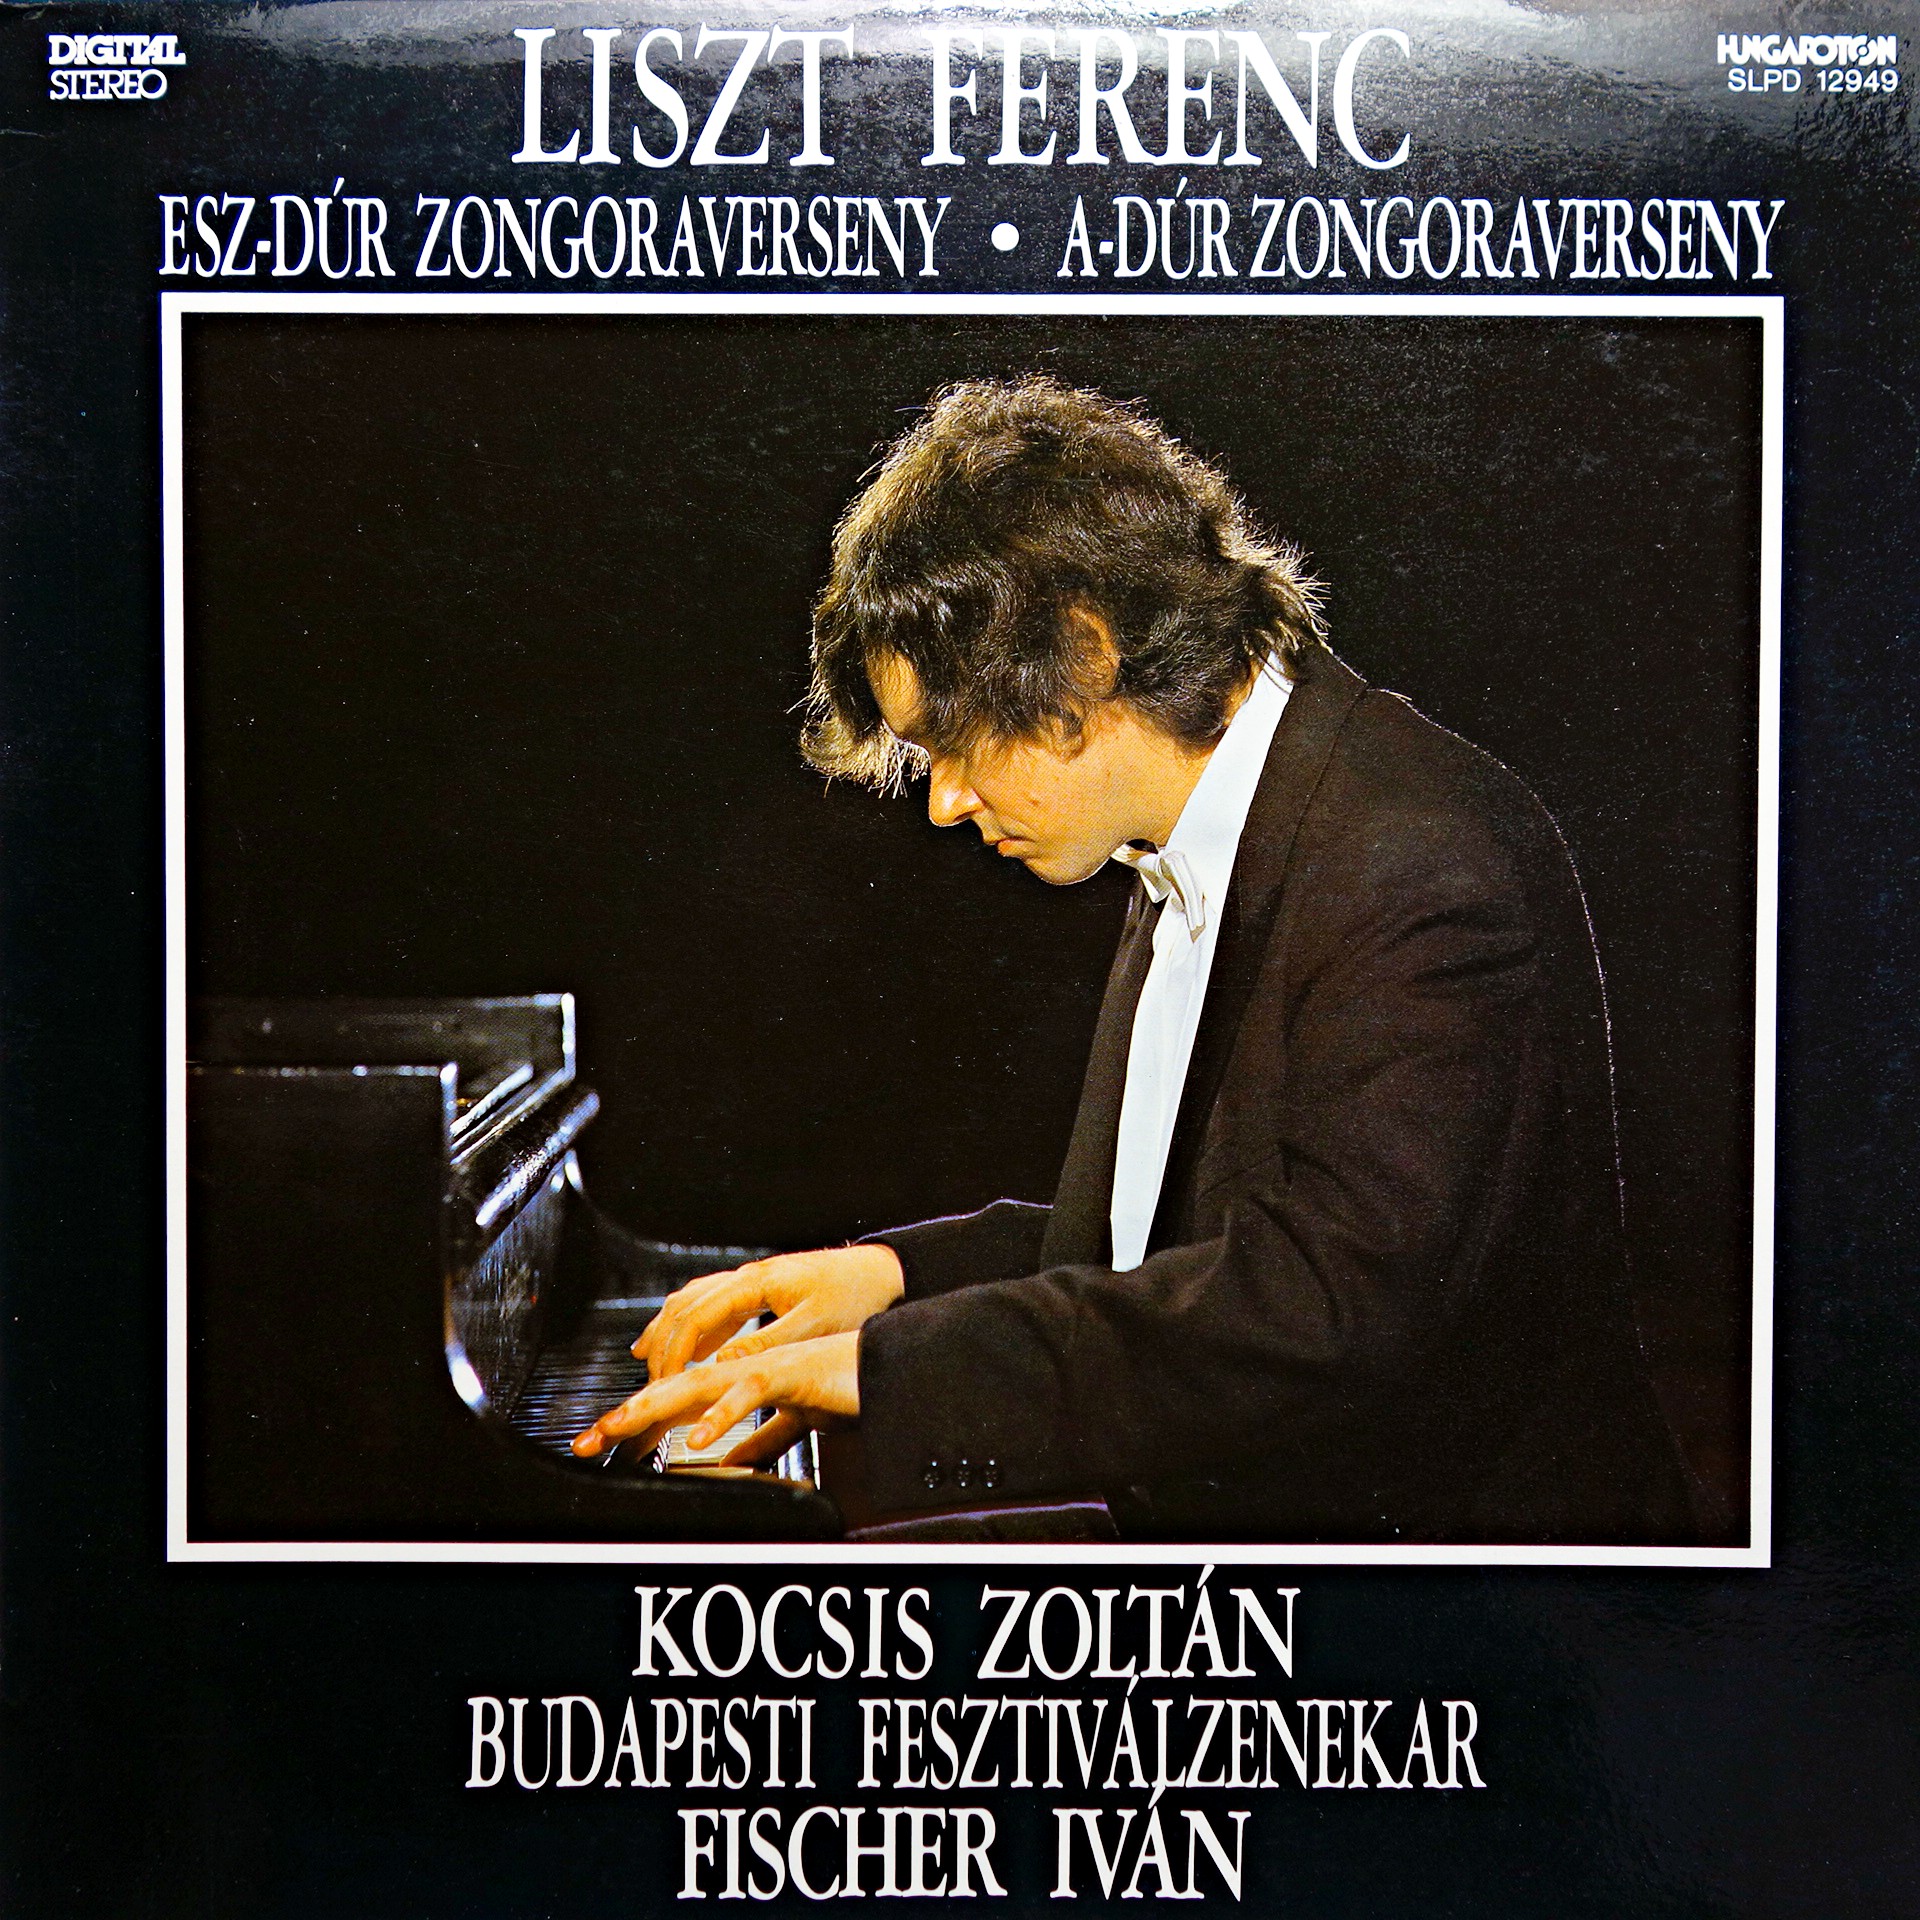 LP Liszt Ferenc, Kocsis Zoltán ‎– Esz-Dúr Zongoraverseny, A-Dúr Zongoraverseny